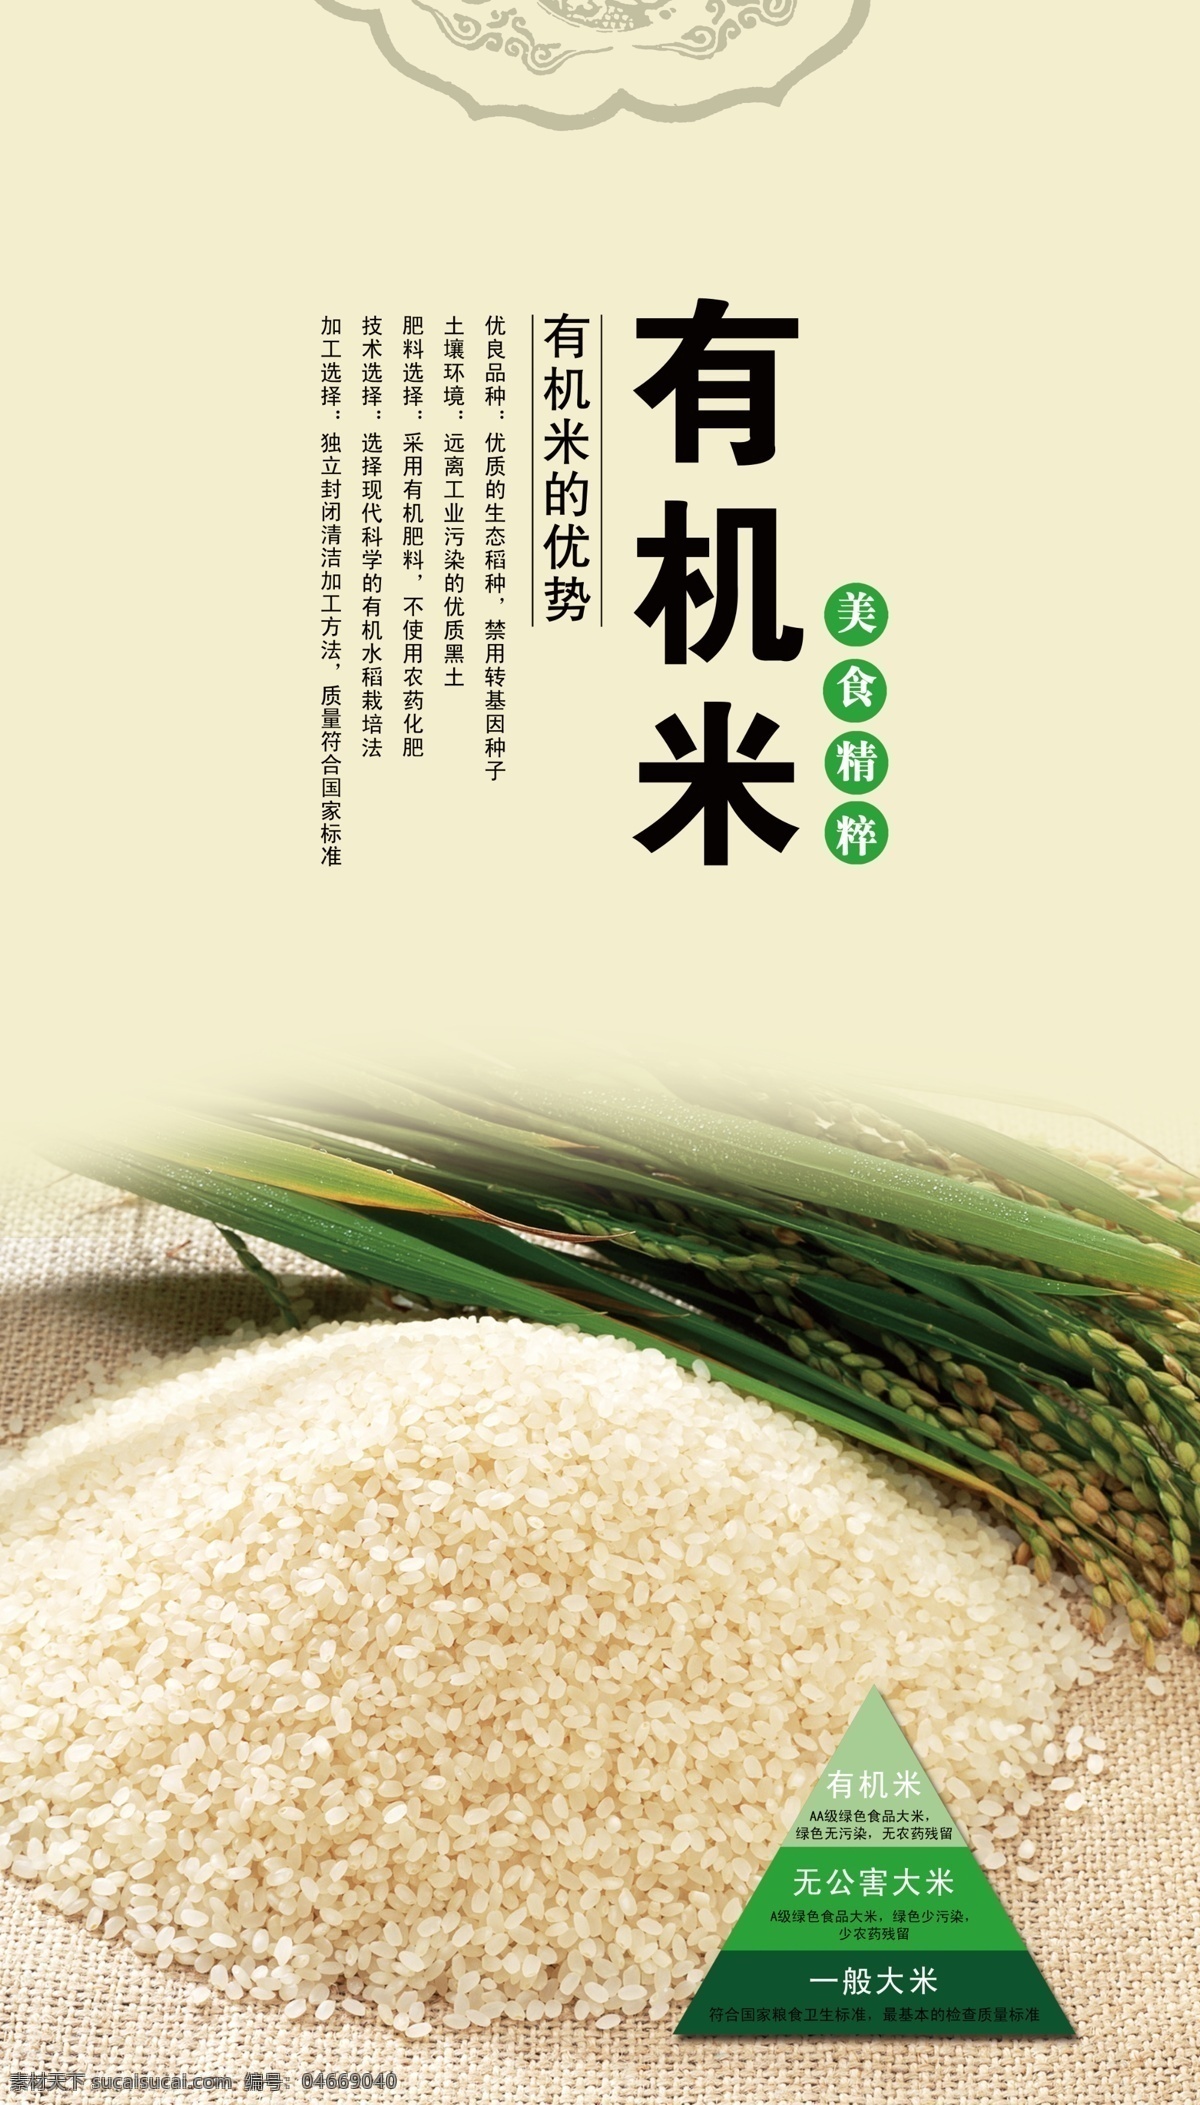 农家有机大米 有机米 纯天然 美味健康 农家 有机大米